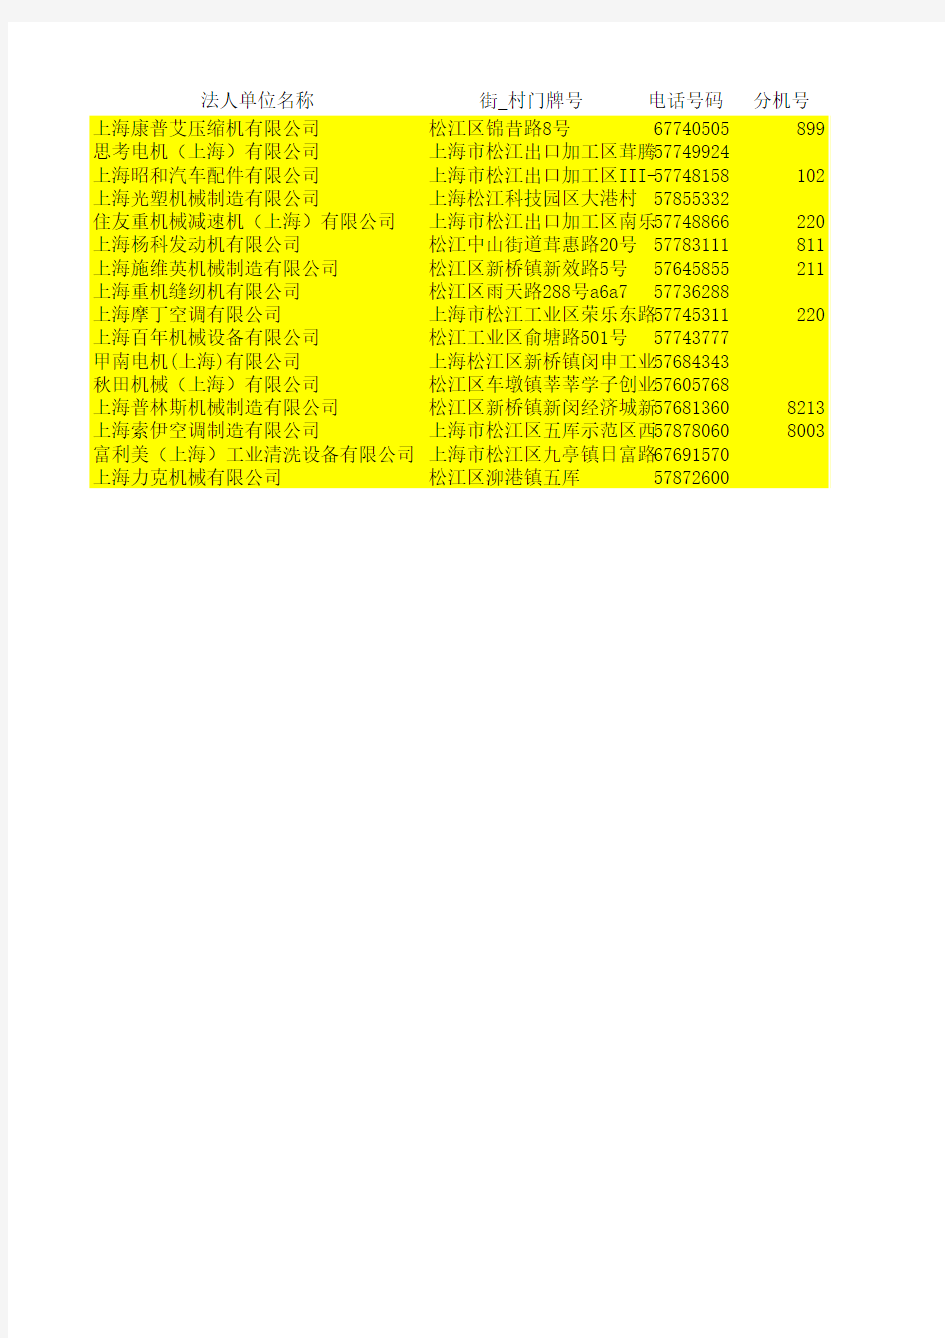 上海市松江企业名录(汇总)